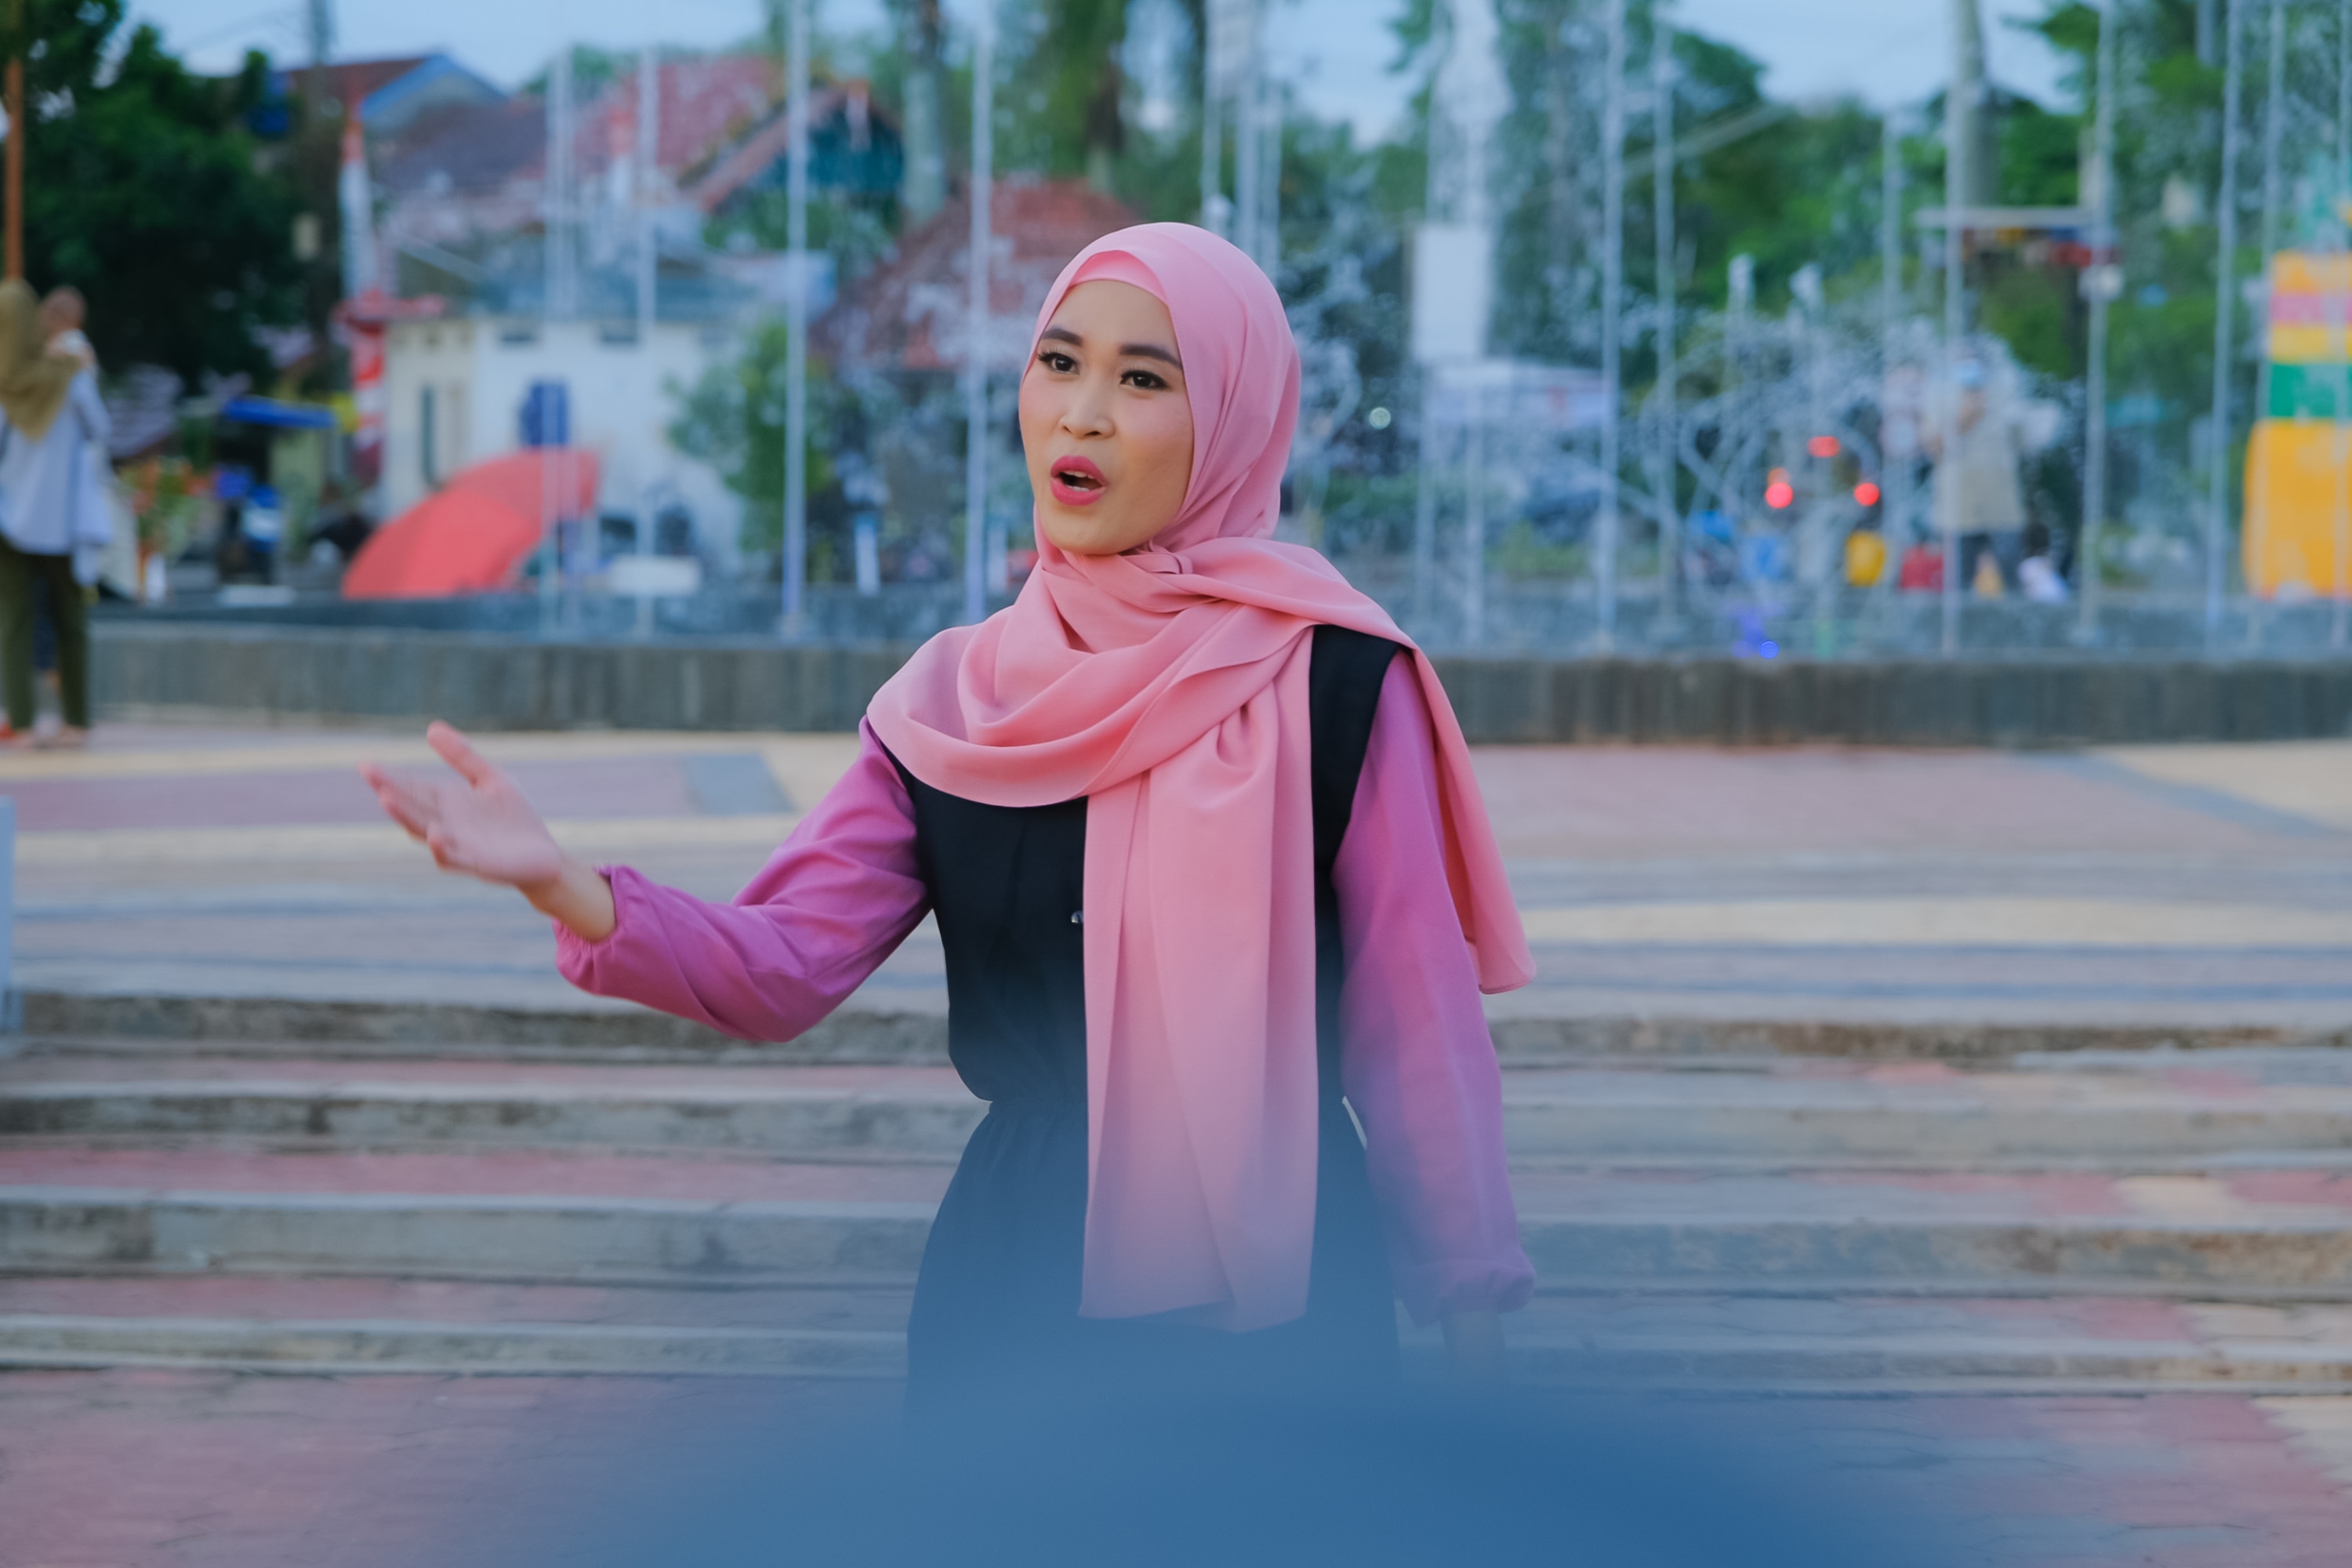 Lagu Wisata Olahraga Muba Viral Jelang Anugerah Pesona Indonesia 2021